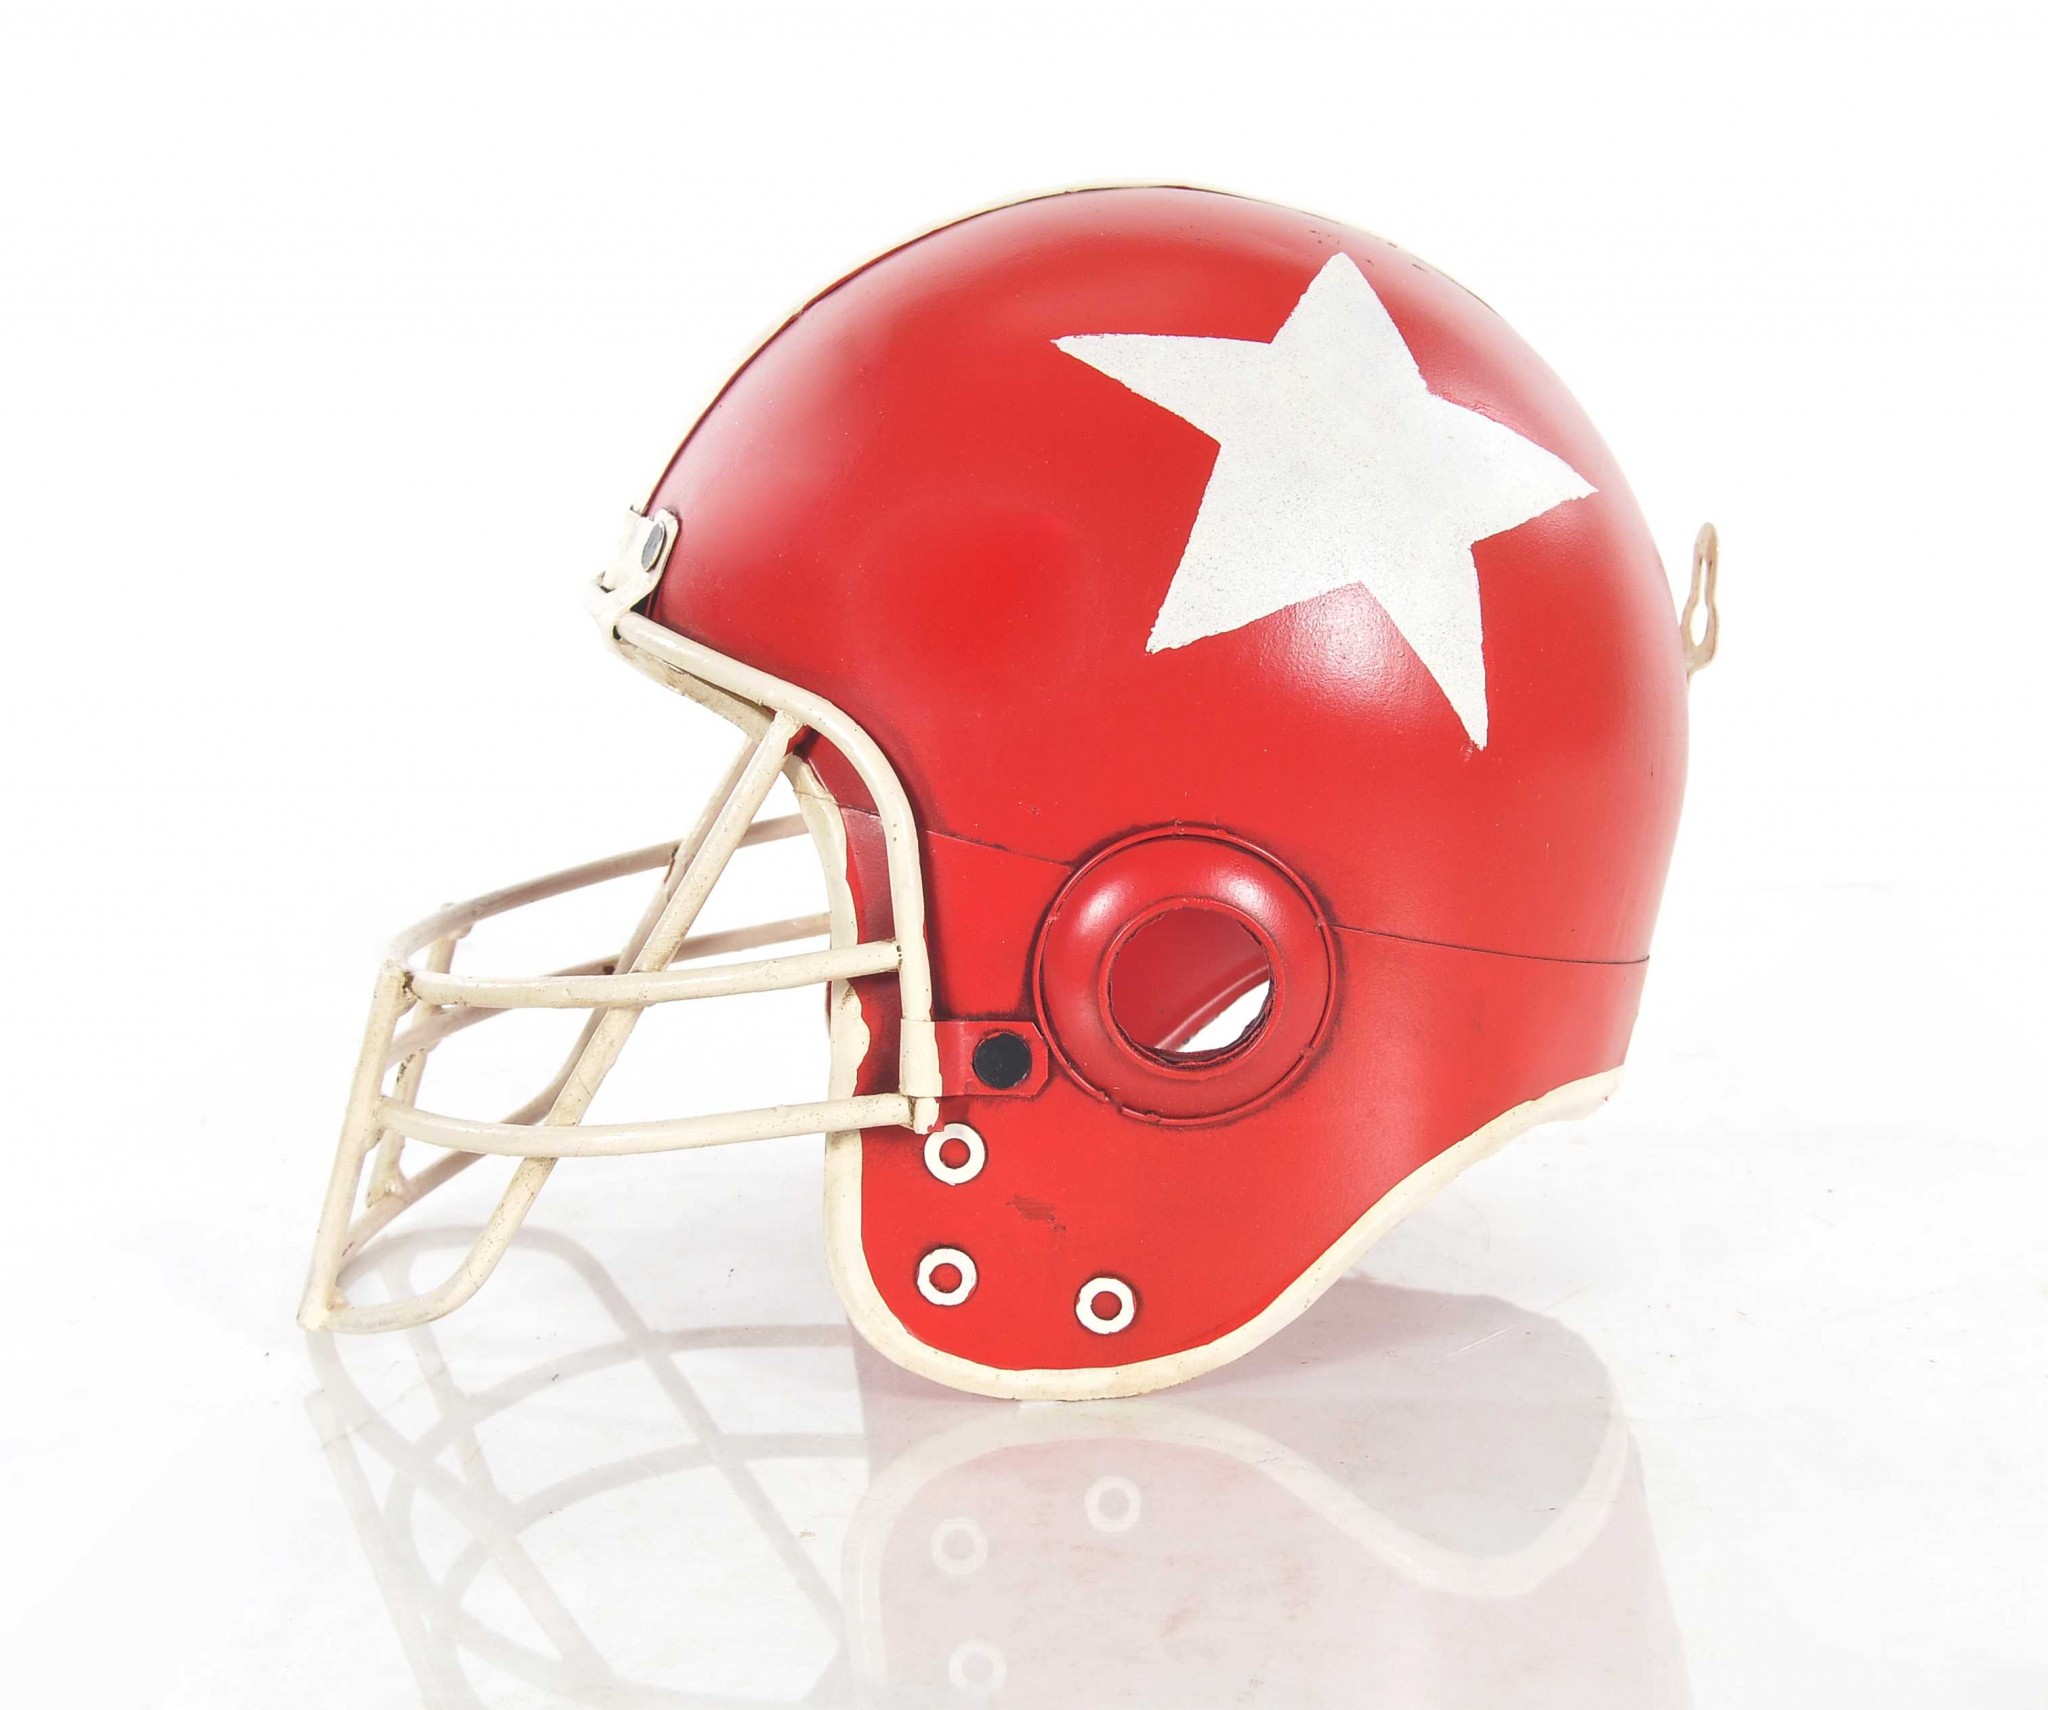 7.5" x 10" x 8.5" Football Helmet